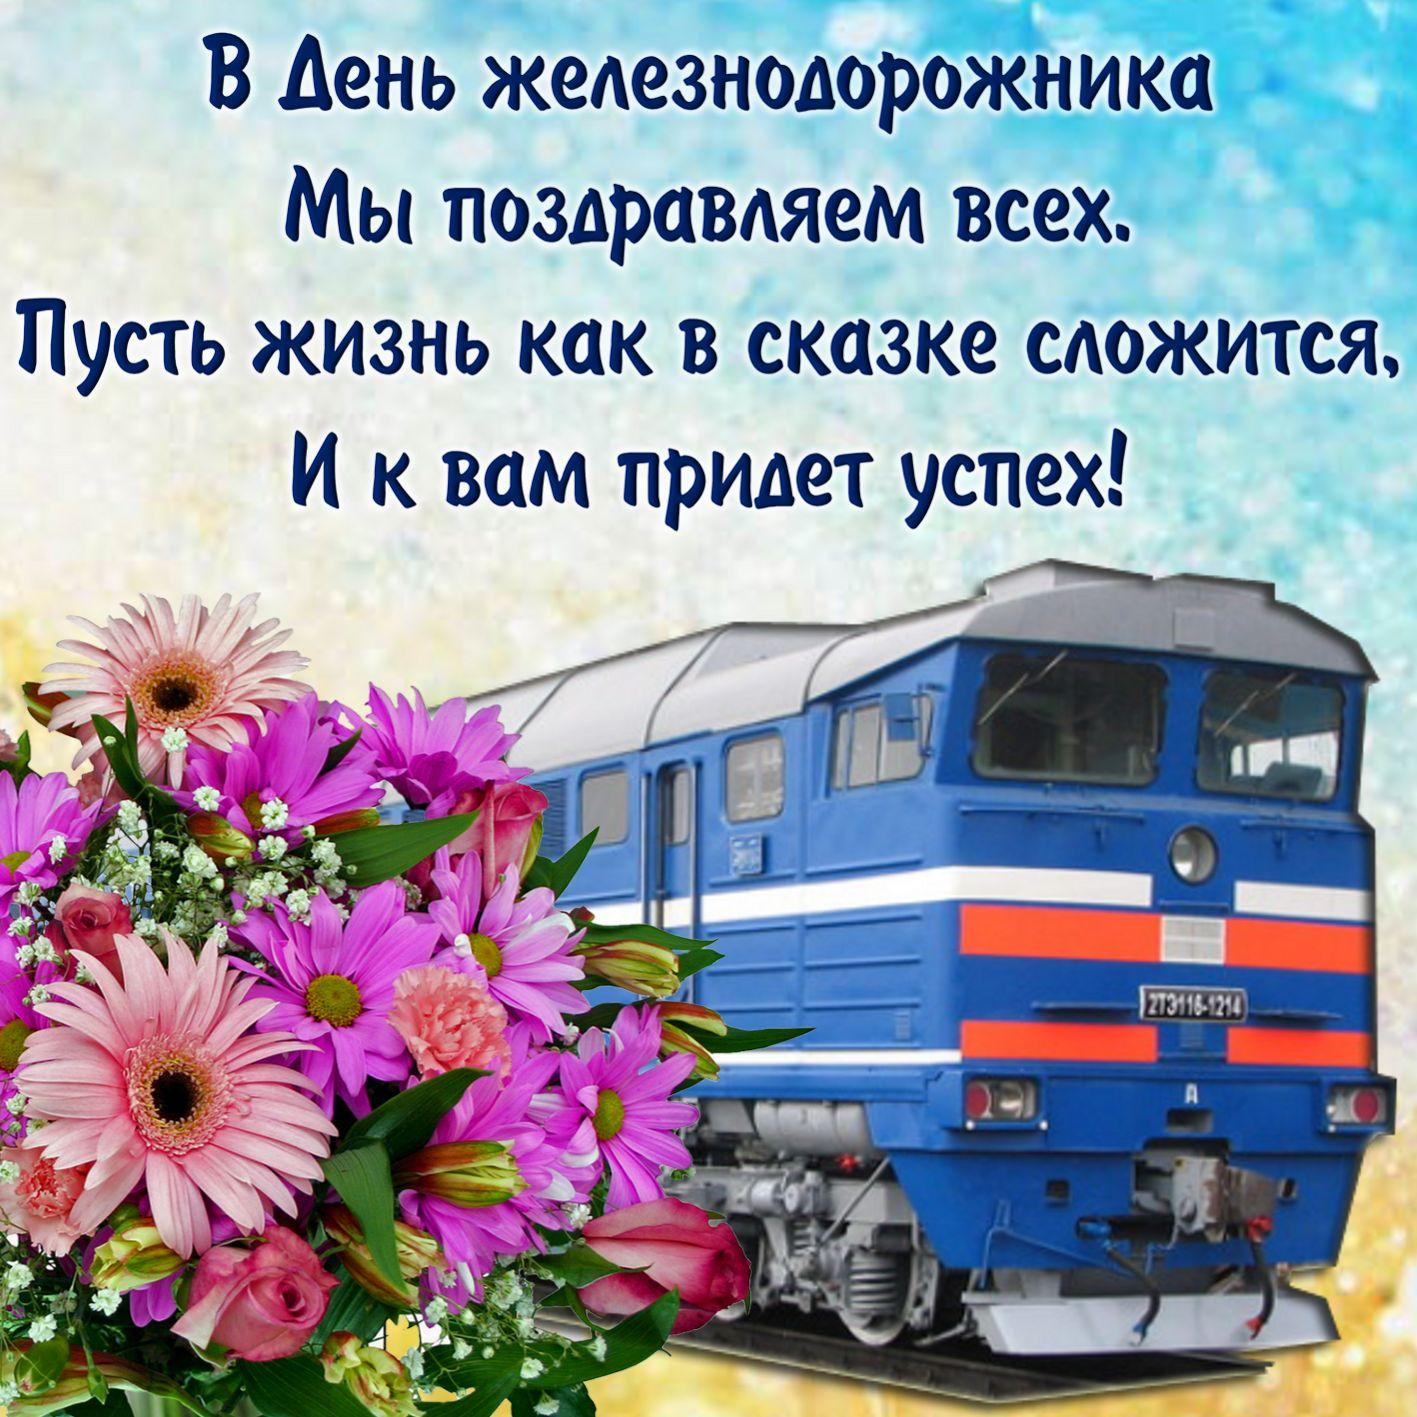 Фото День железнодорожника 7 августа 2022: новые красивые открытки с поздравлениями в стихах и прозе 5